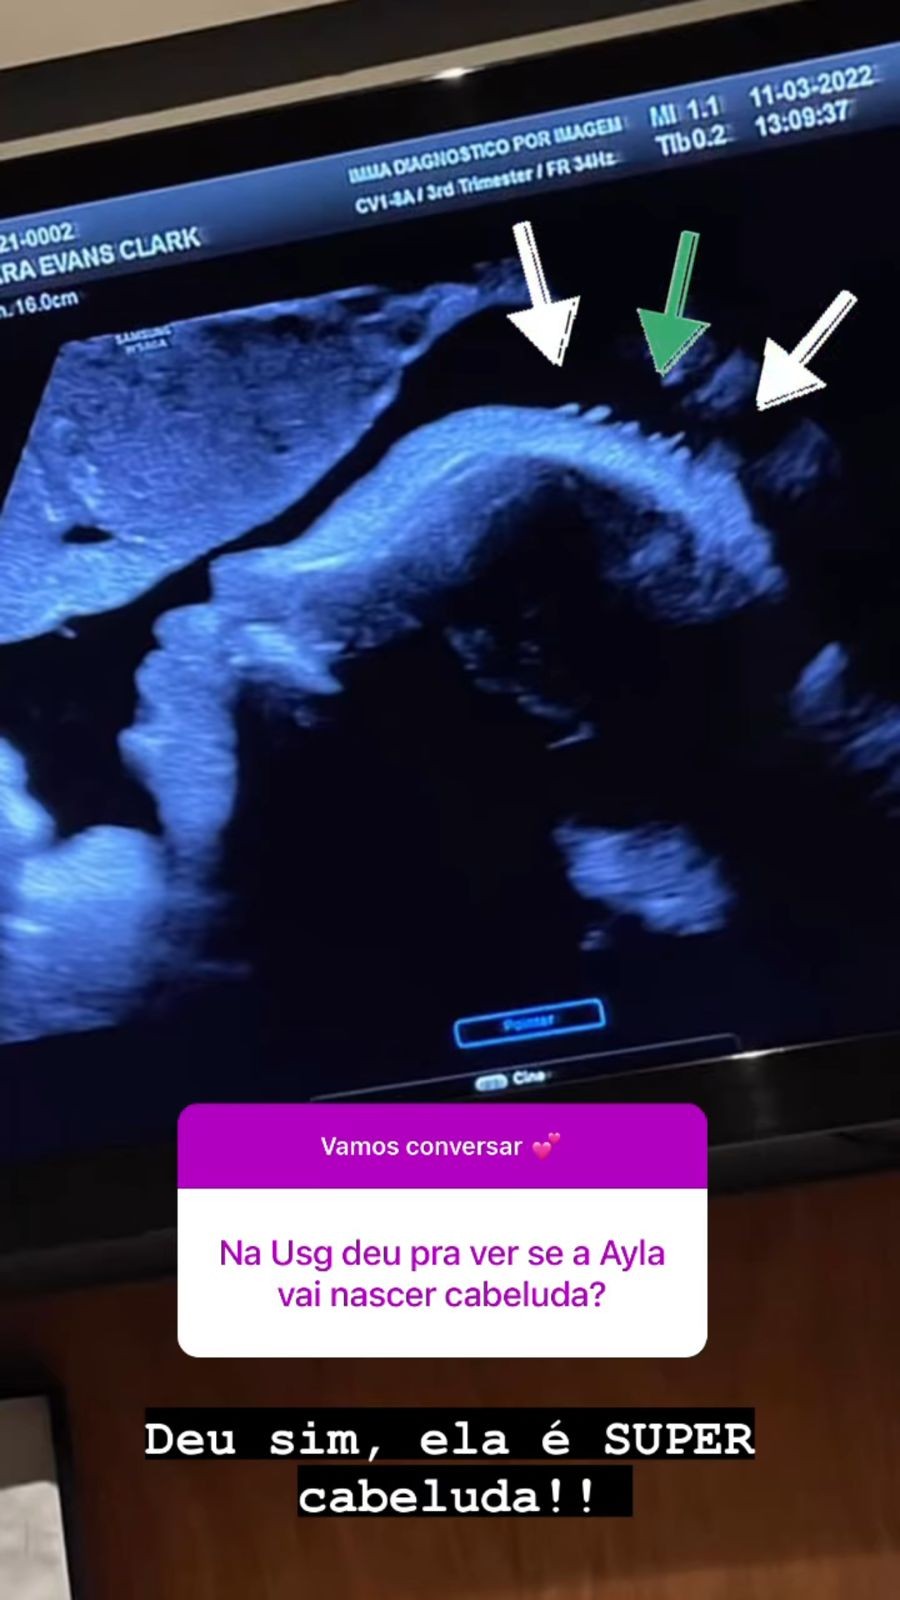 Bárbara Evans mostra rostinho da filha em ultrassom  (Foto: instagram/reprodução)